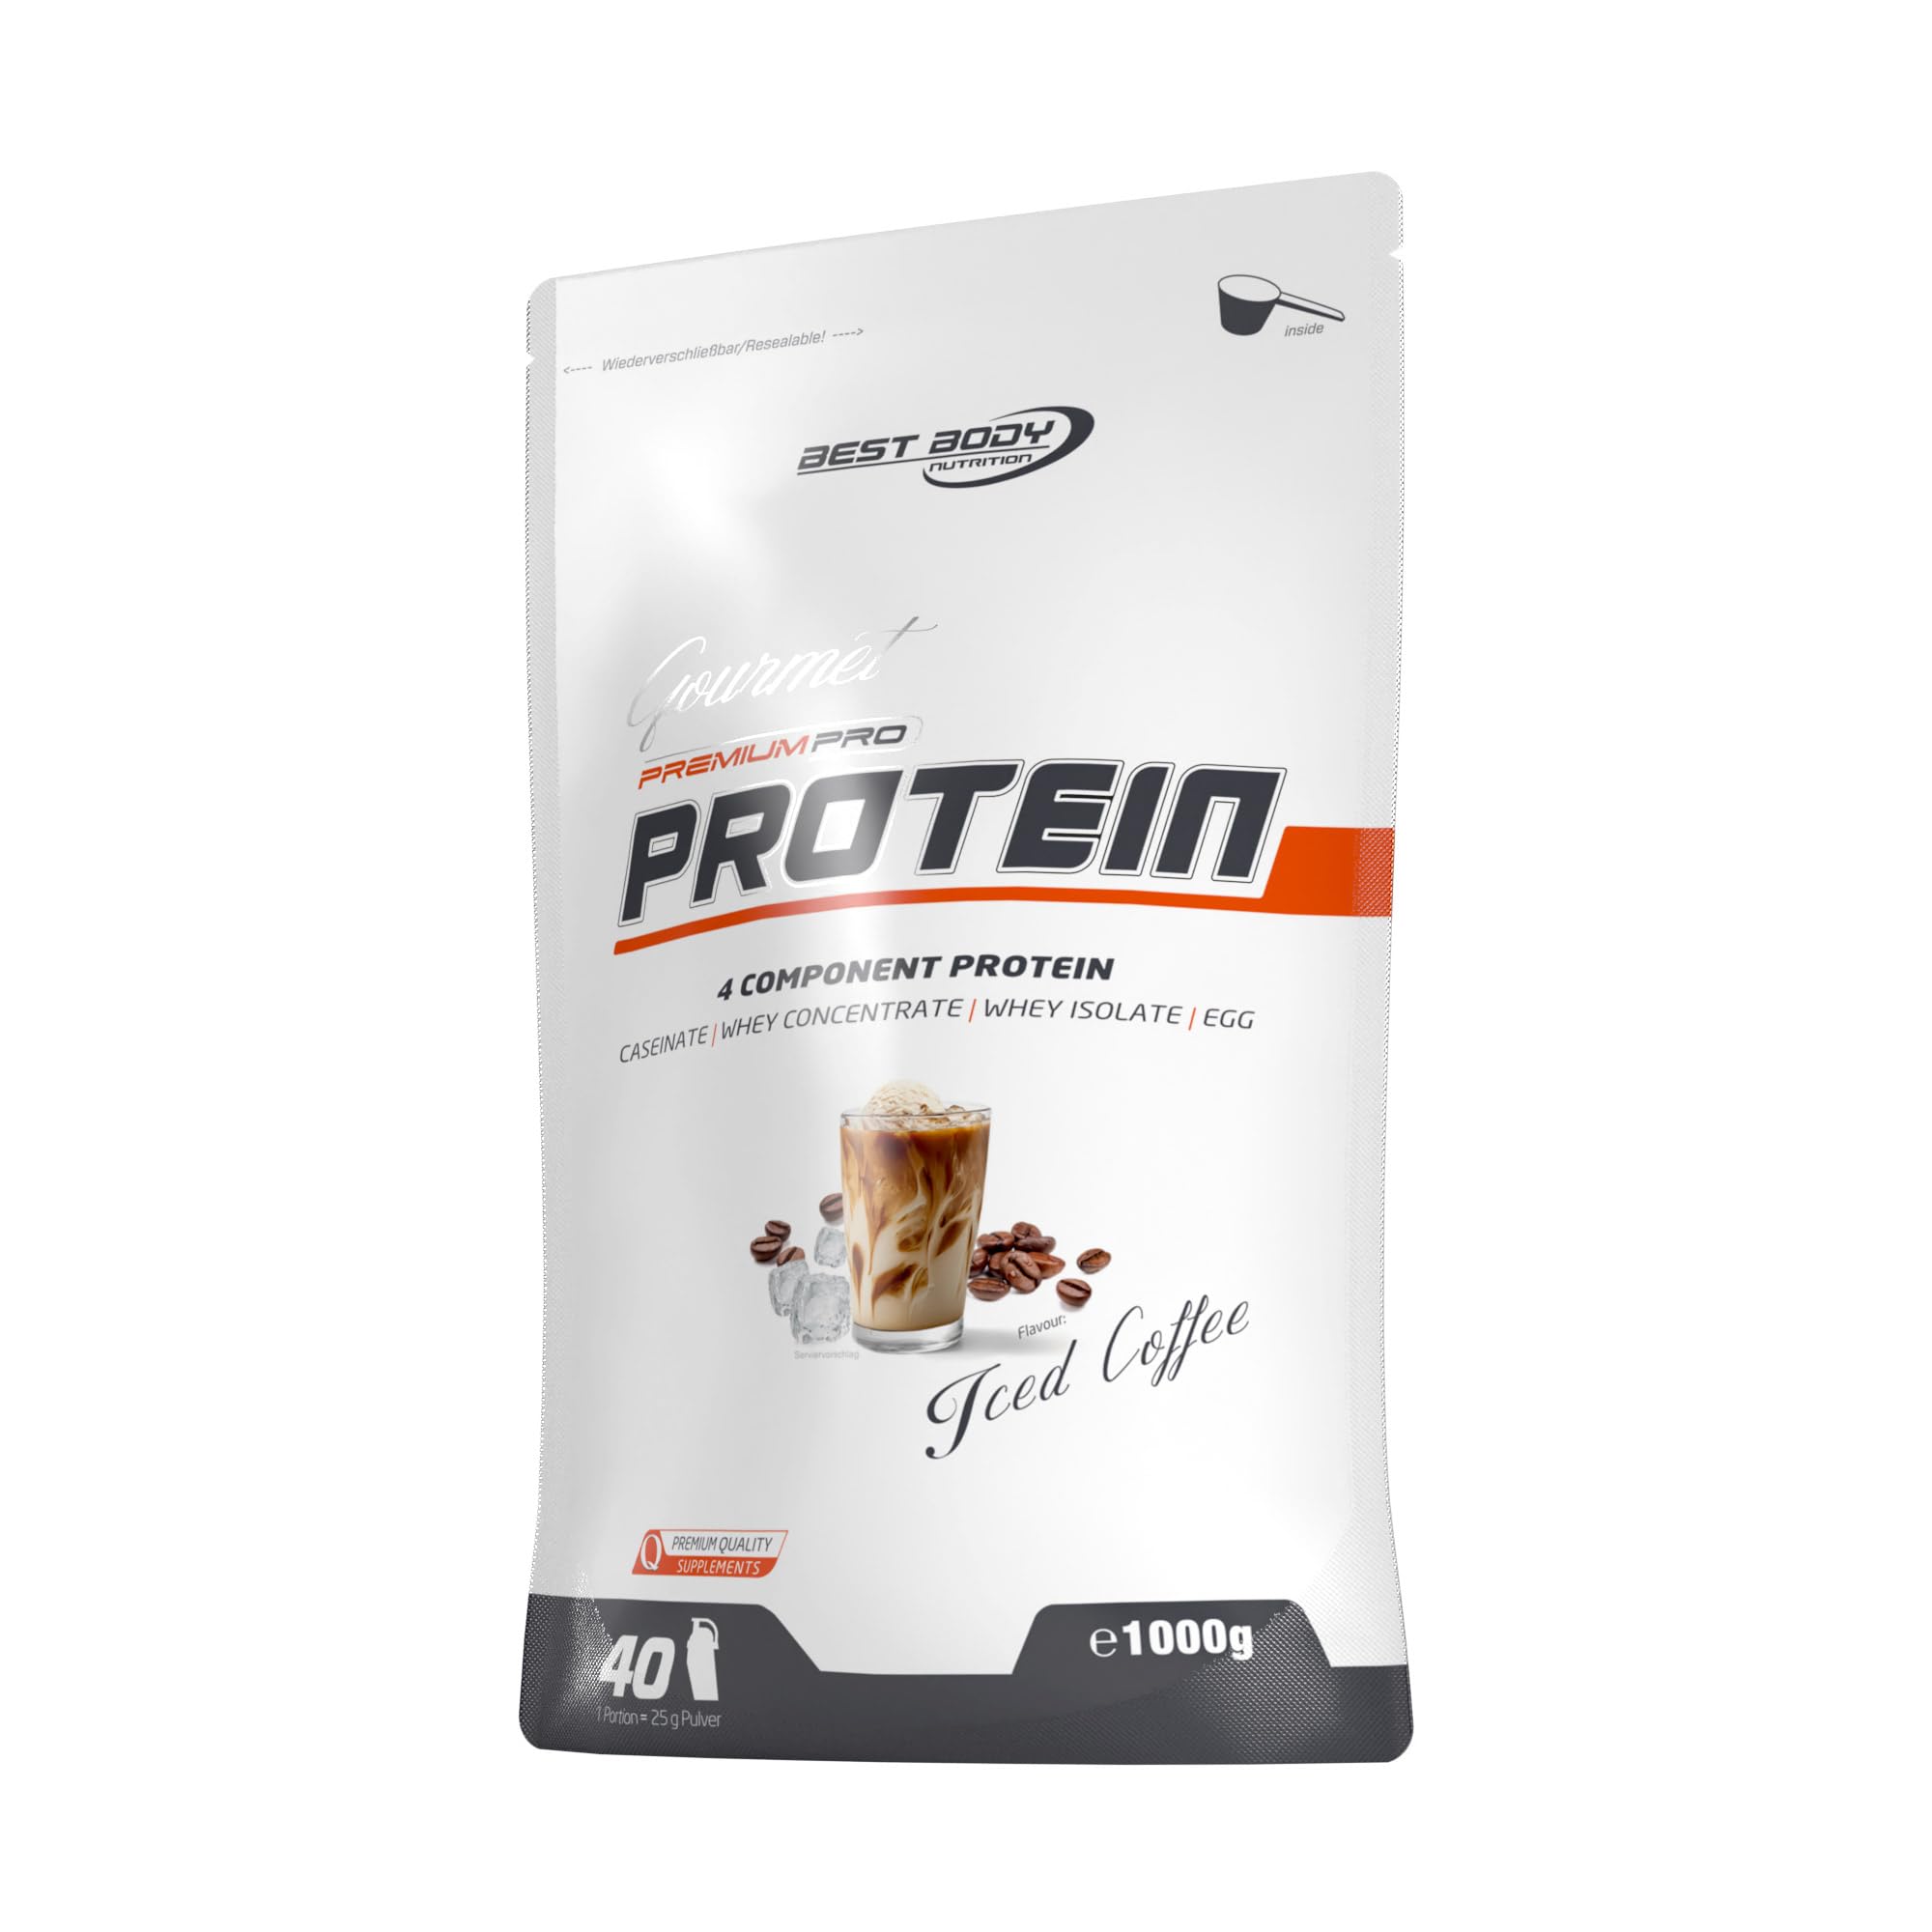 Best Body Nutrition Gourmet Premium Pro Protein, Iced Coffee, 4 Komponenten Protein Shake: Caseinat, Whey Konzentrat, Whey Isolat, Eiprotein, 1 kg Zipp Beutel